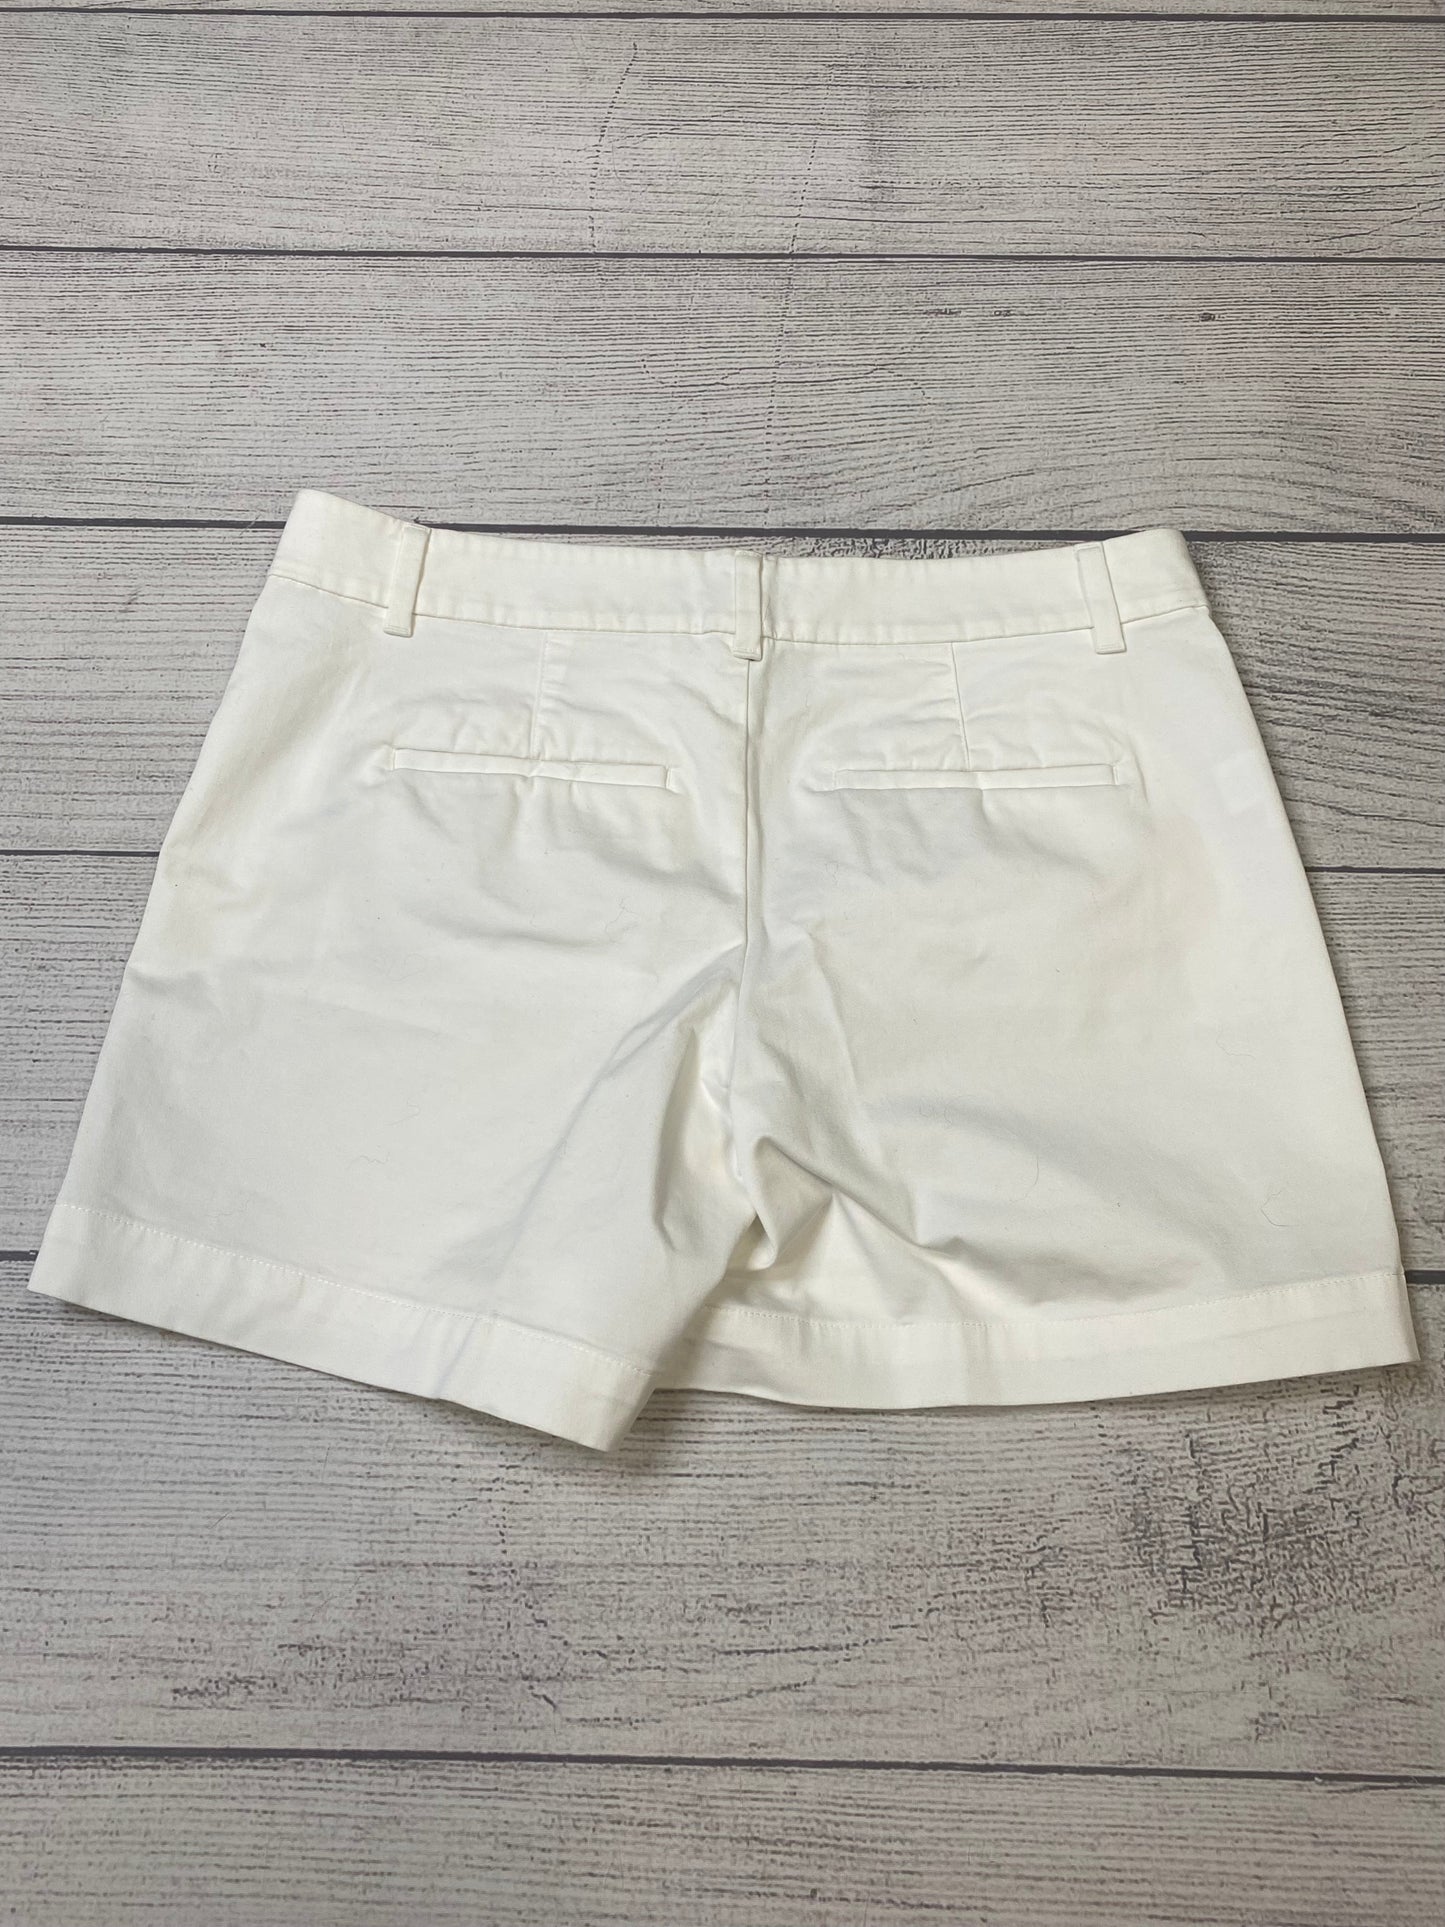 White Shorts Ann Taylor O, Size 4